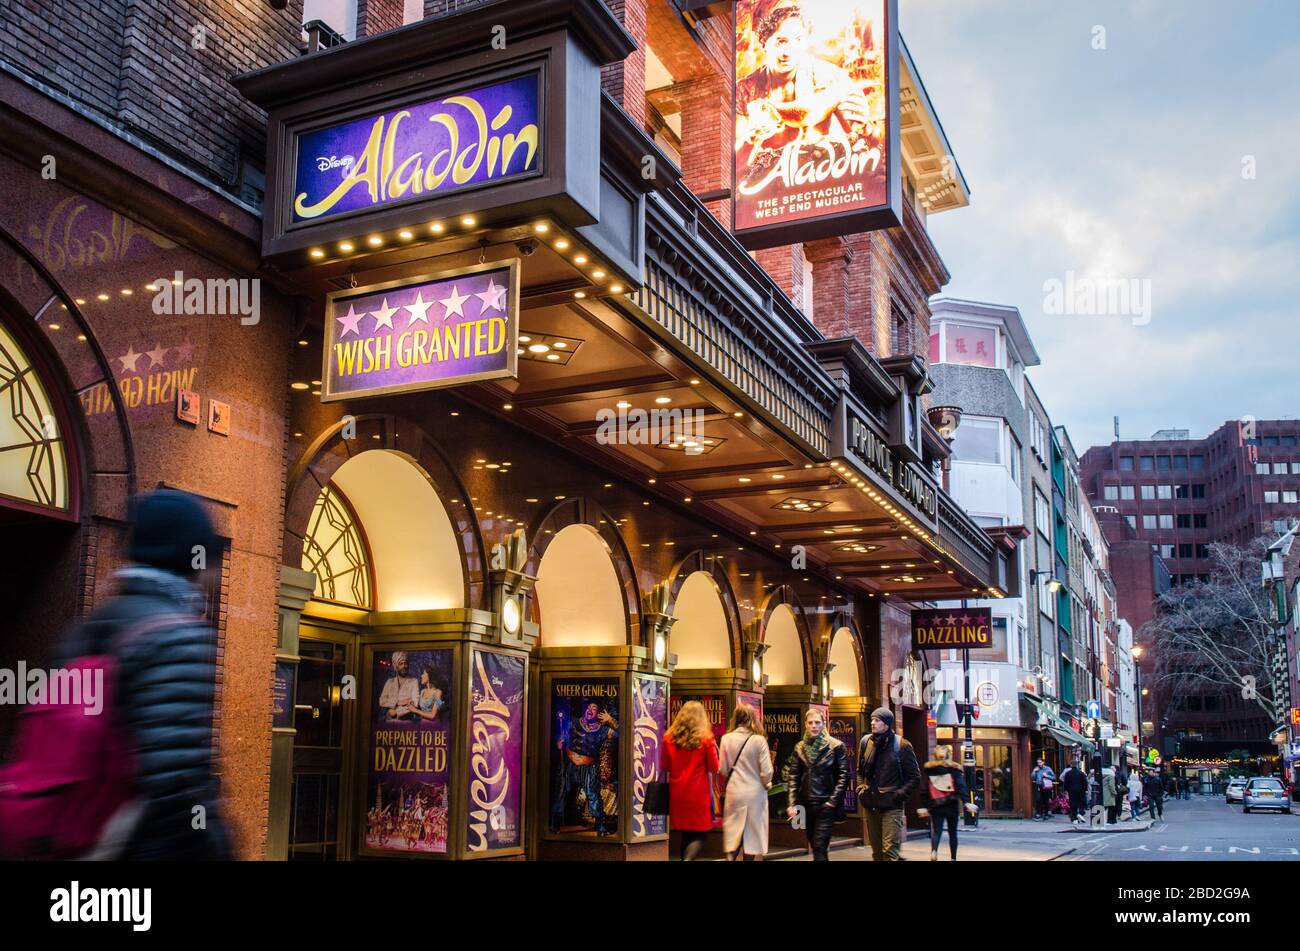 LONDRA - esterno del teatro Prince Edward che mostra Aladdin. Un popolare musical nel West End di Londra Foto Stock